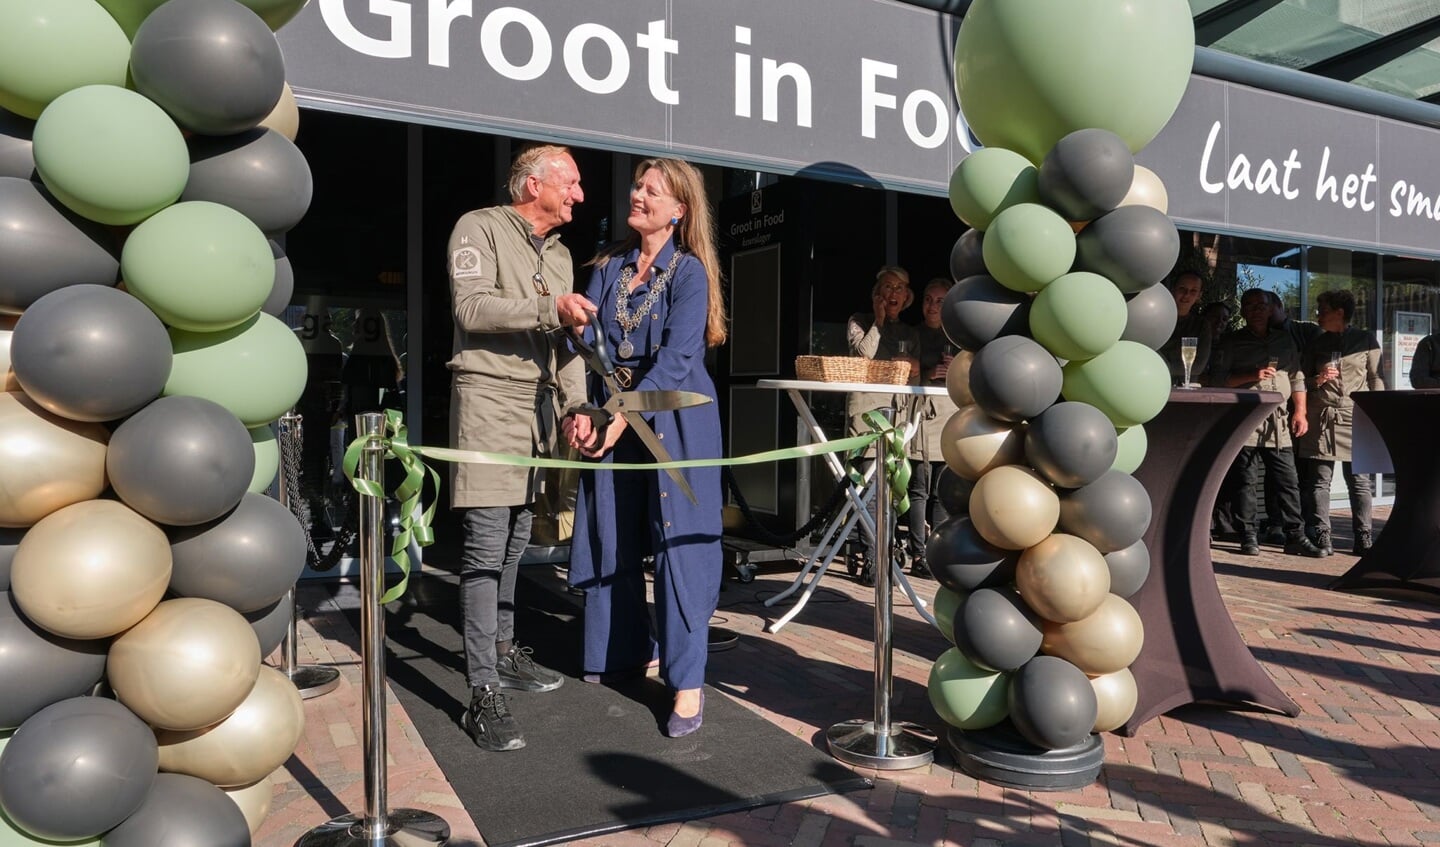 Burgemeester Anja Schouten opent Groot in Food.